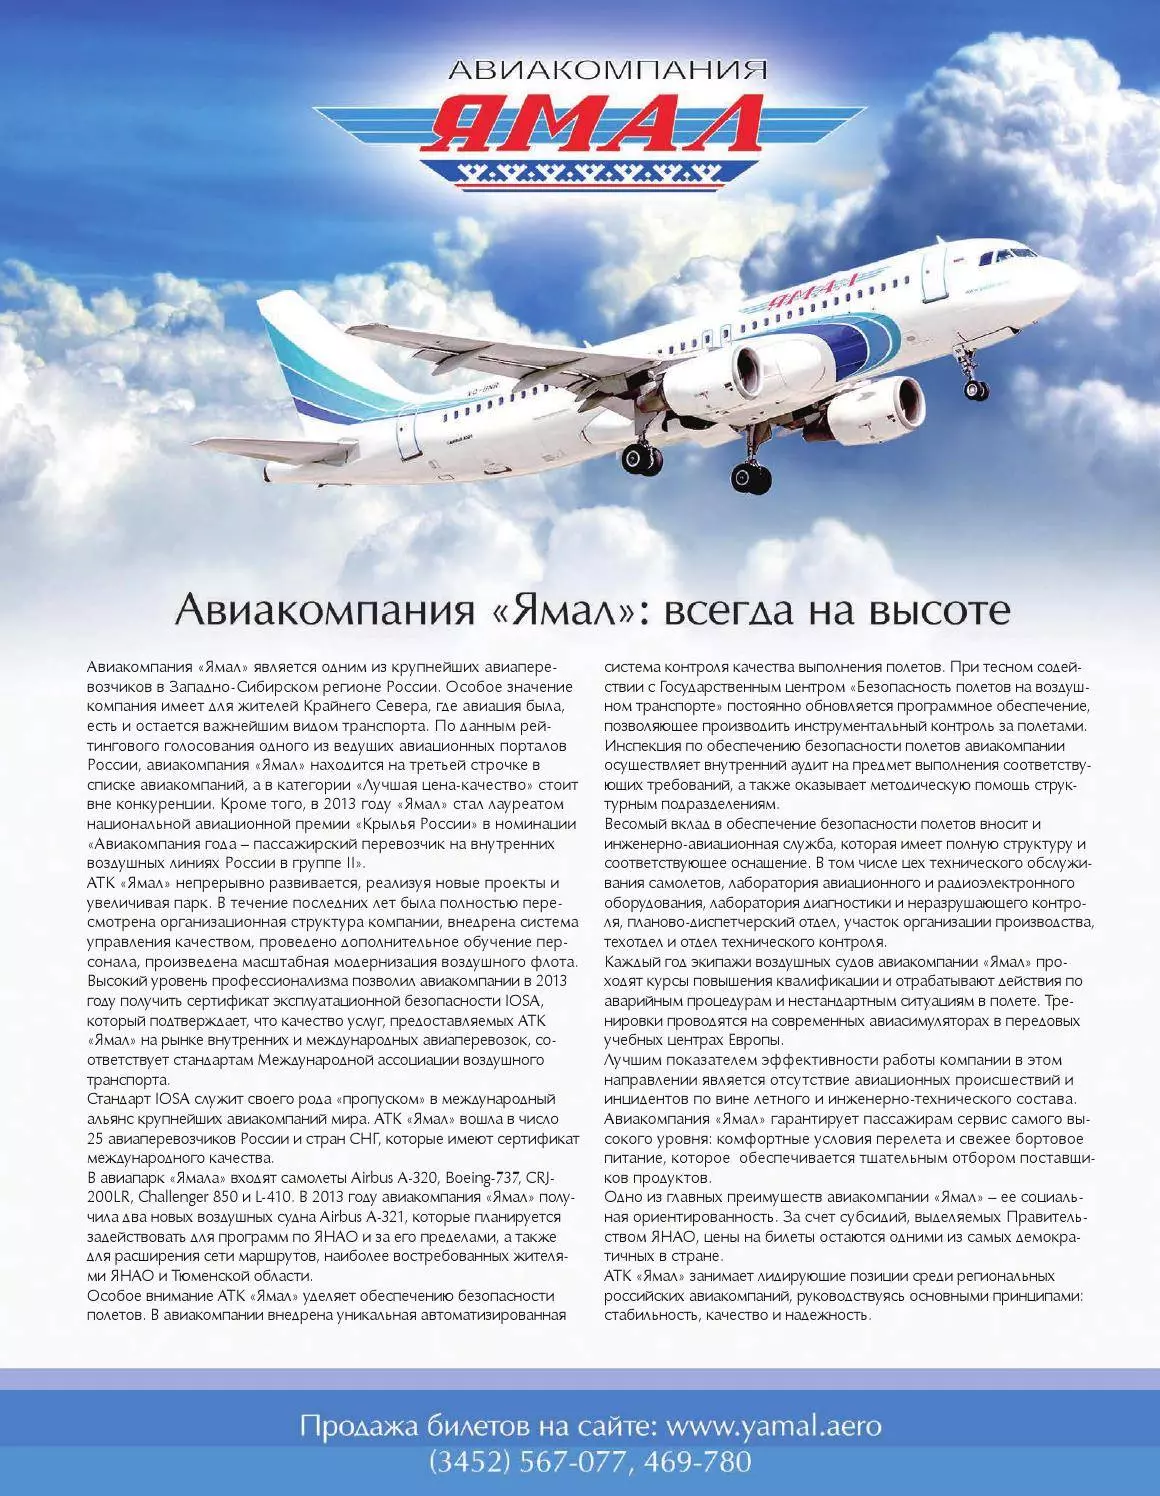 Авиакомпания ямал (yamal) отзывы - авиакомпании - первый независимый сайт отзывов россии